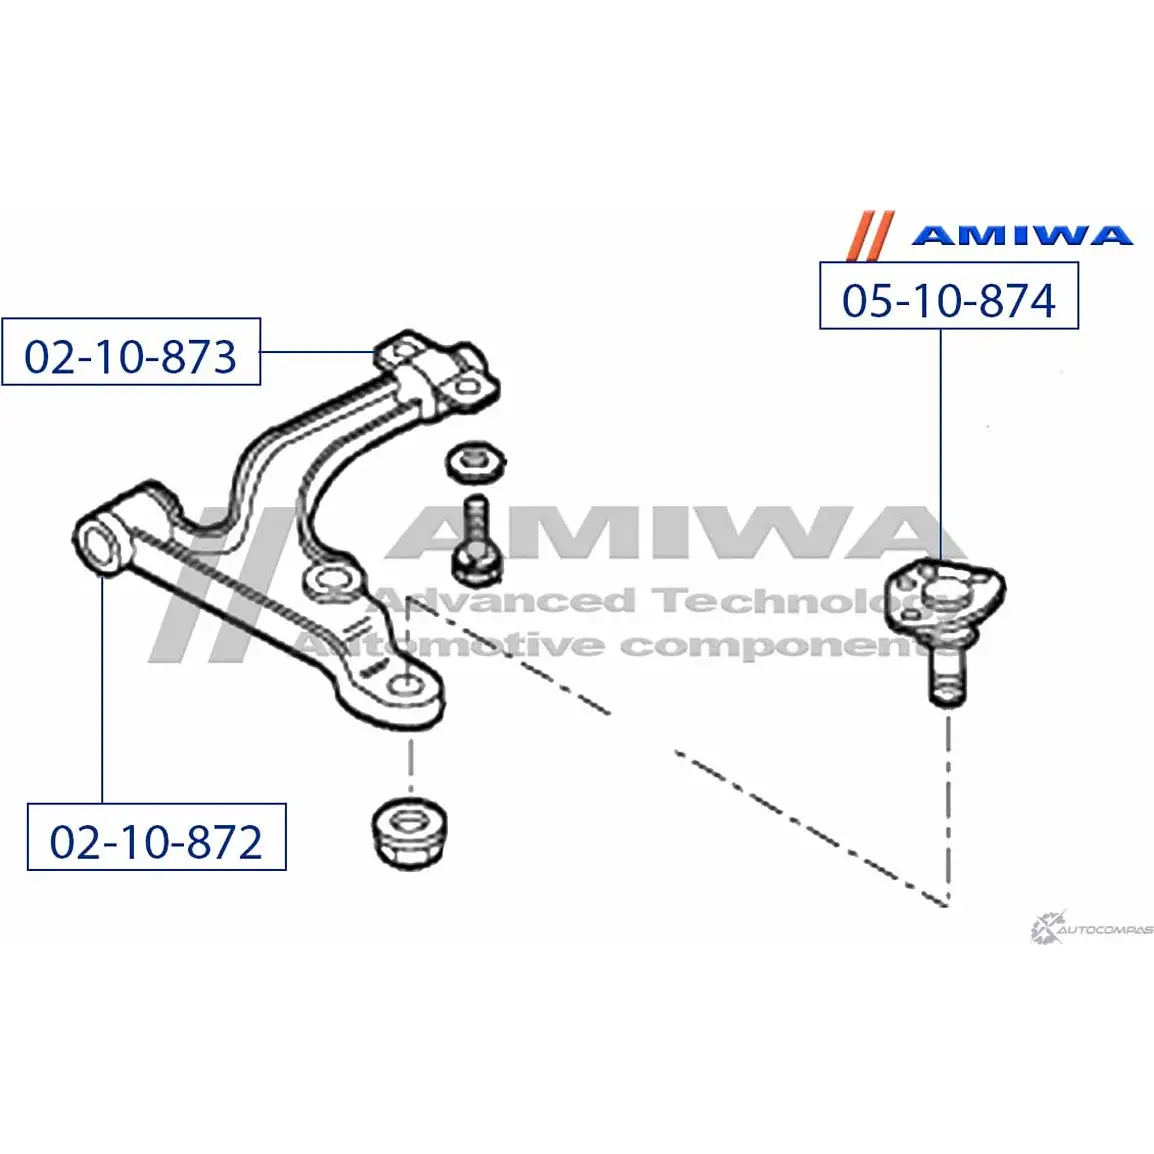 Сайленблок передний переднего рычага AMIWA WDNMK 1422492374 02-10-872 UQ5 R13 изображение 1